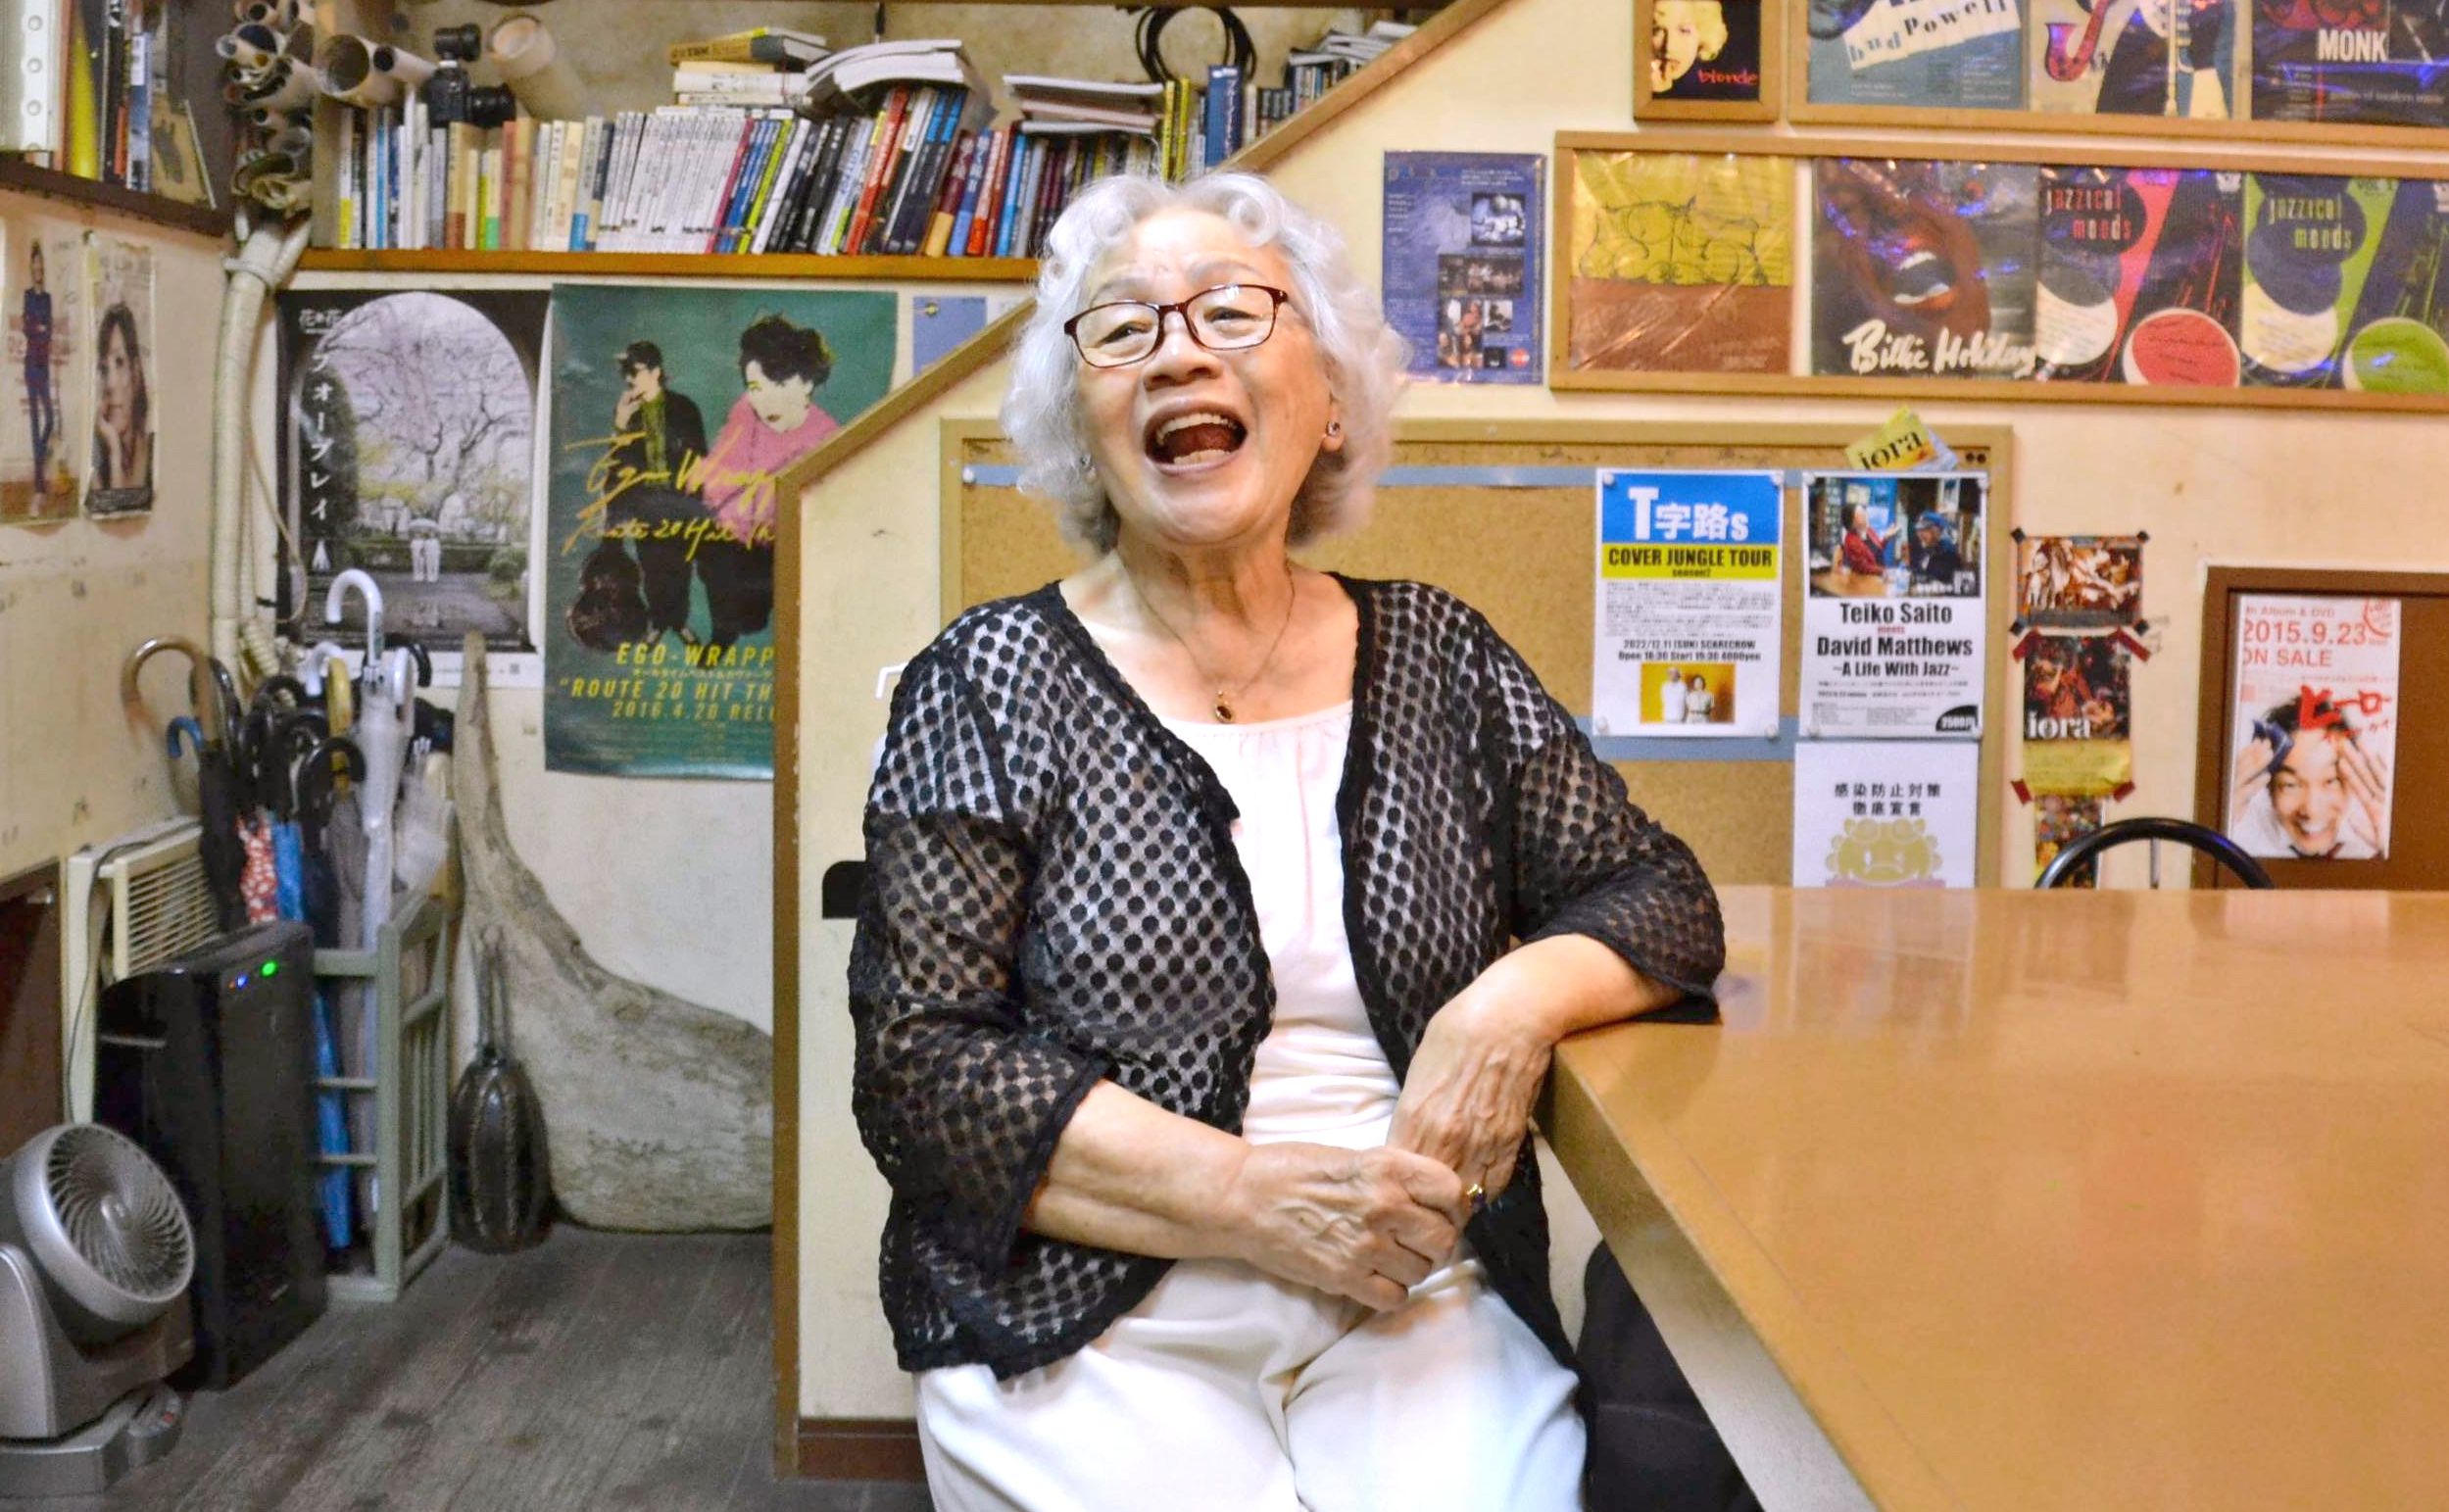 86歳の歌姫「最初で最後のCD」 米軍統治下の沖縄で活躍 石垣島で歌い